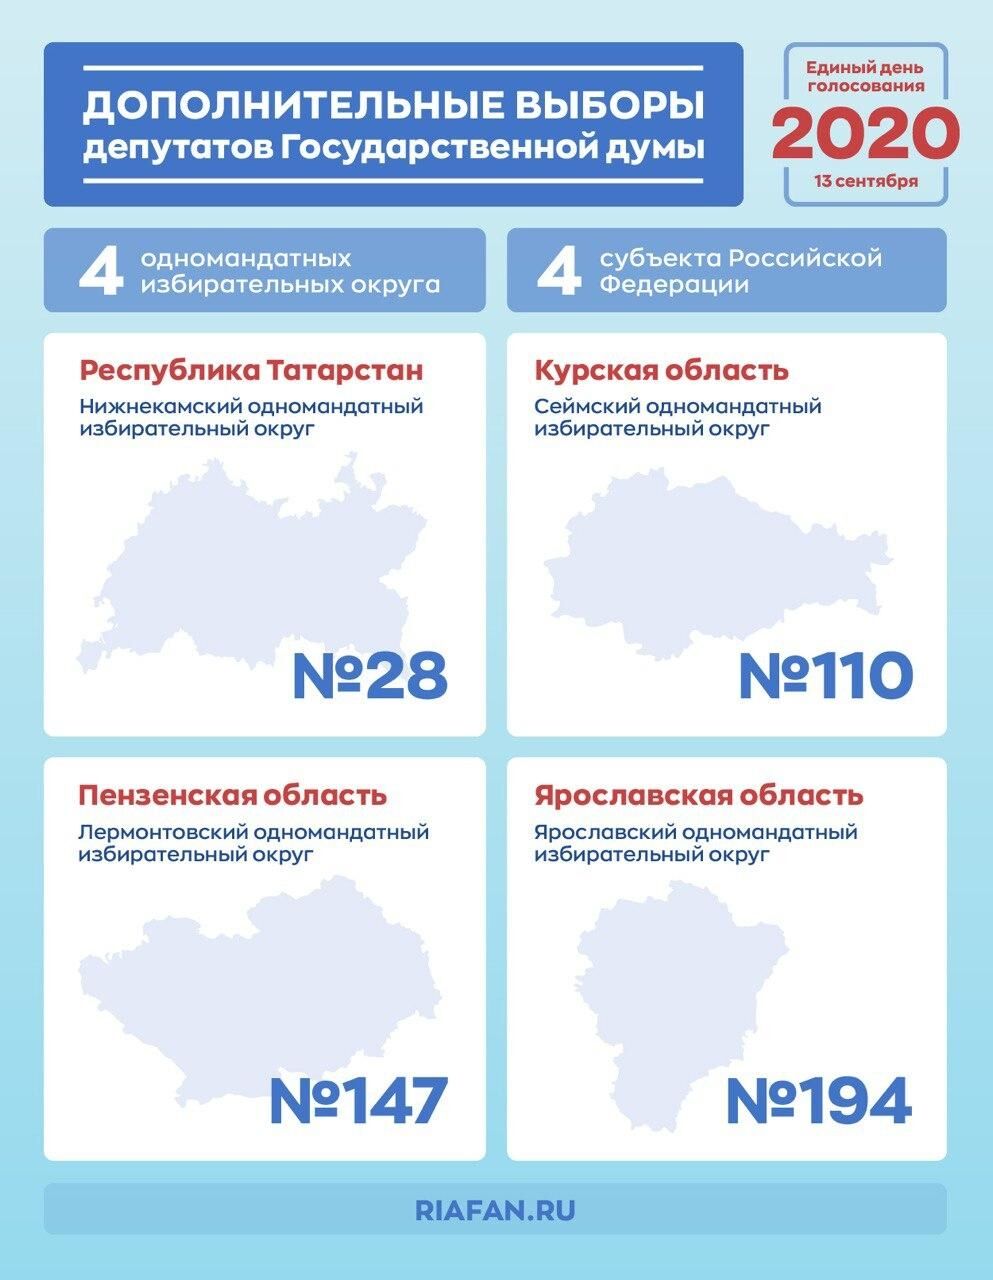 Электронное голосование на довыборах в Госдуму проведут в Курской и Ярославской областях